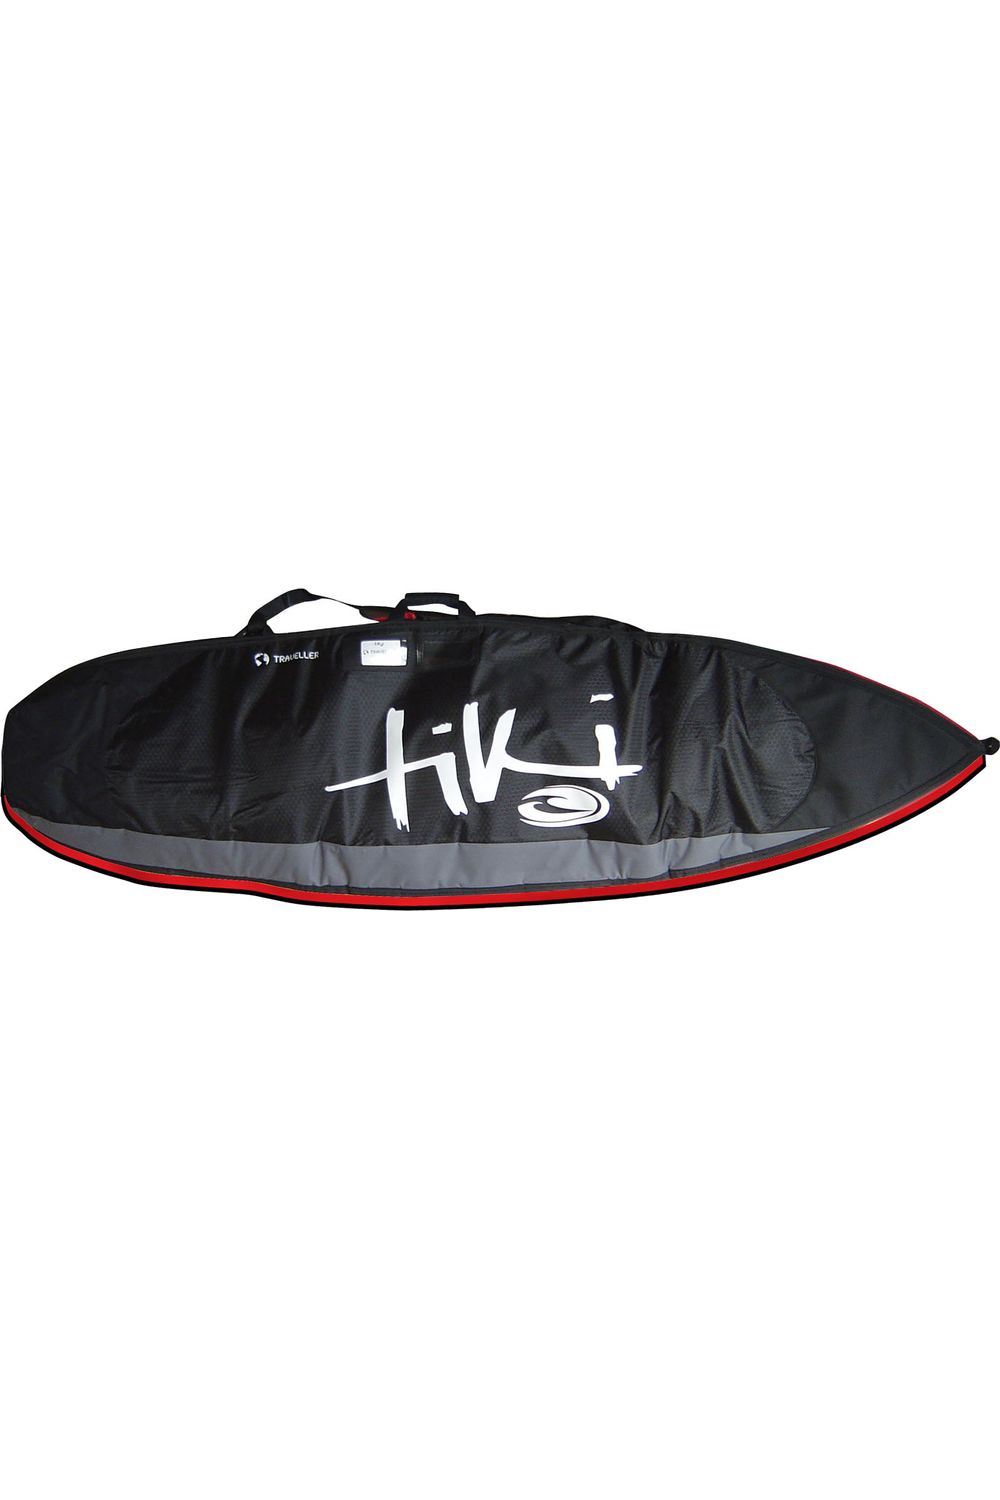 6'9 Travel Fish Surfboard Bag MKII